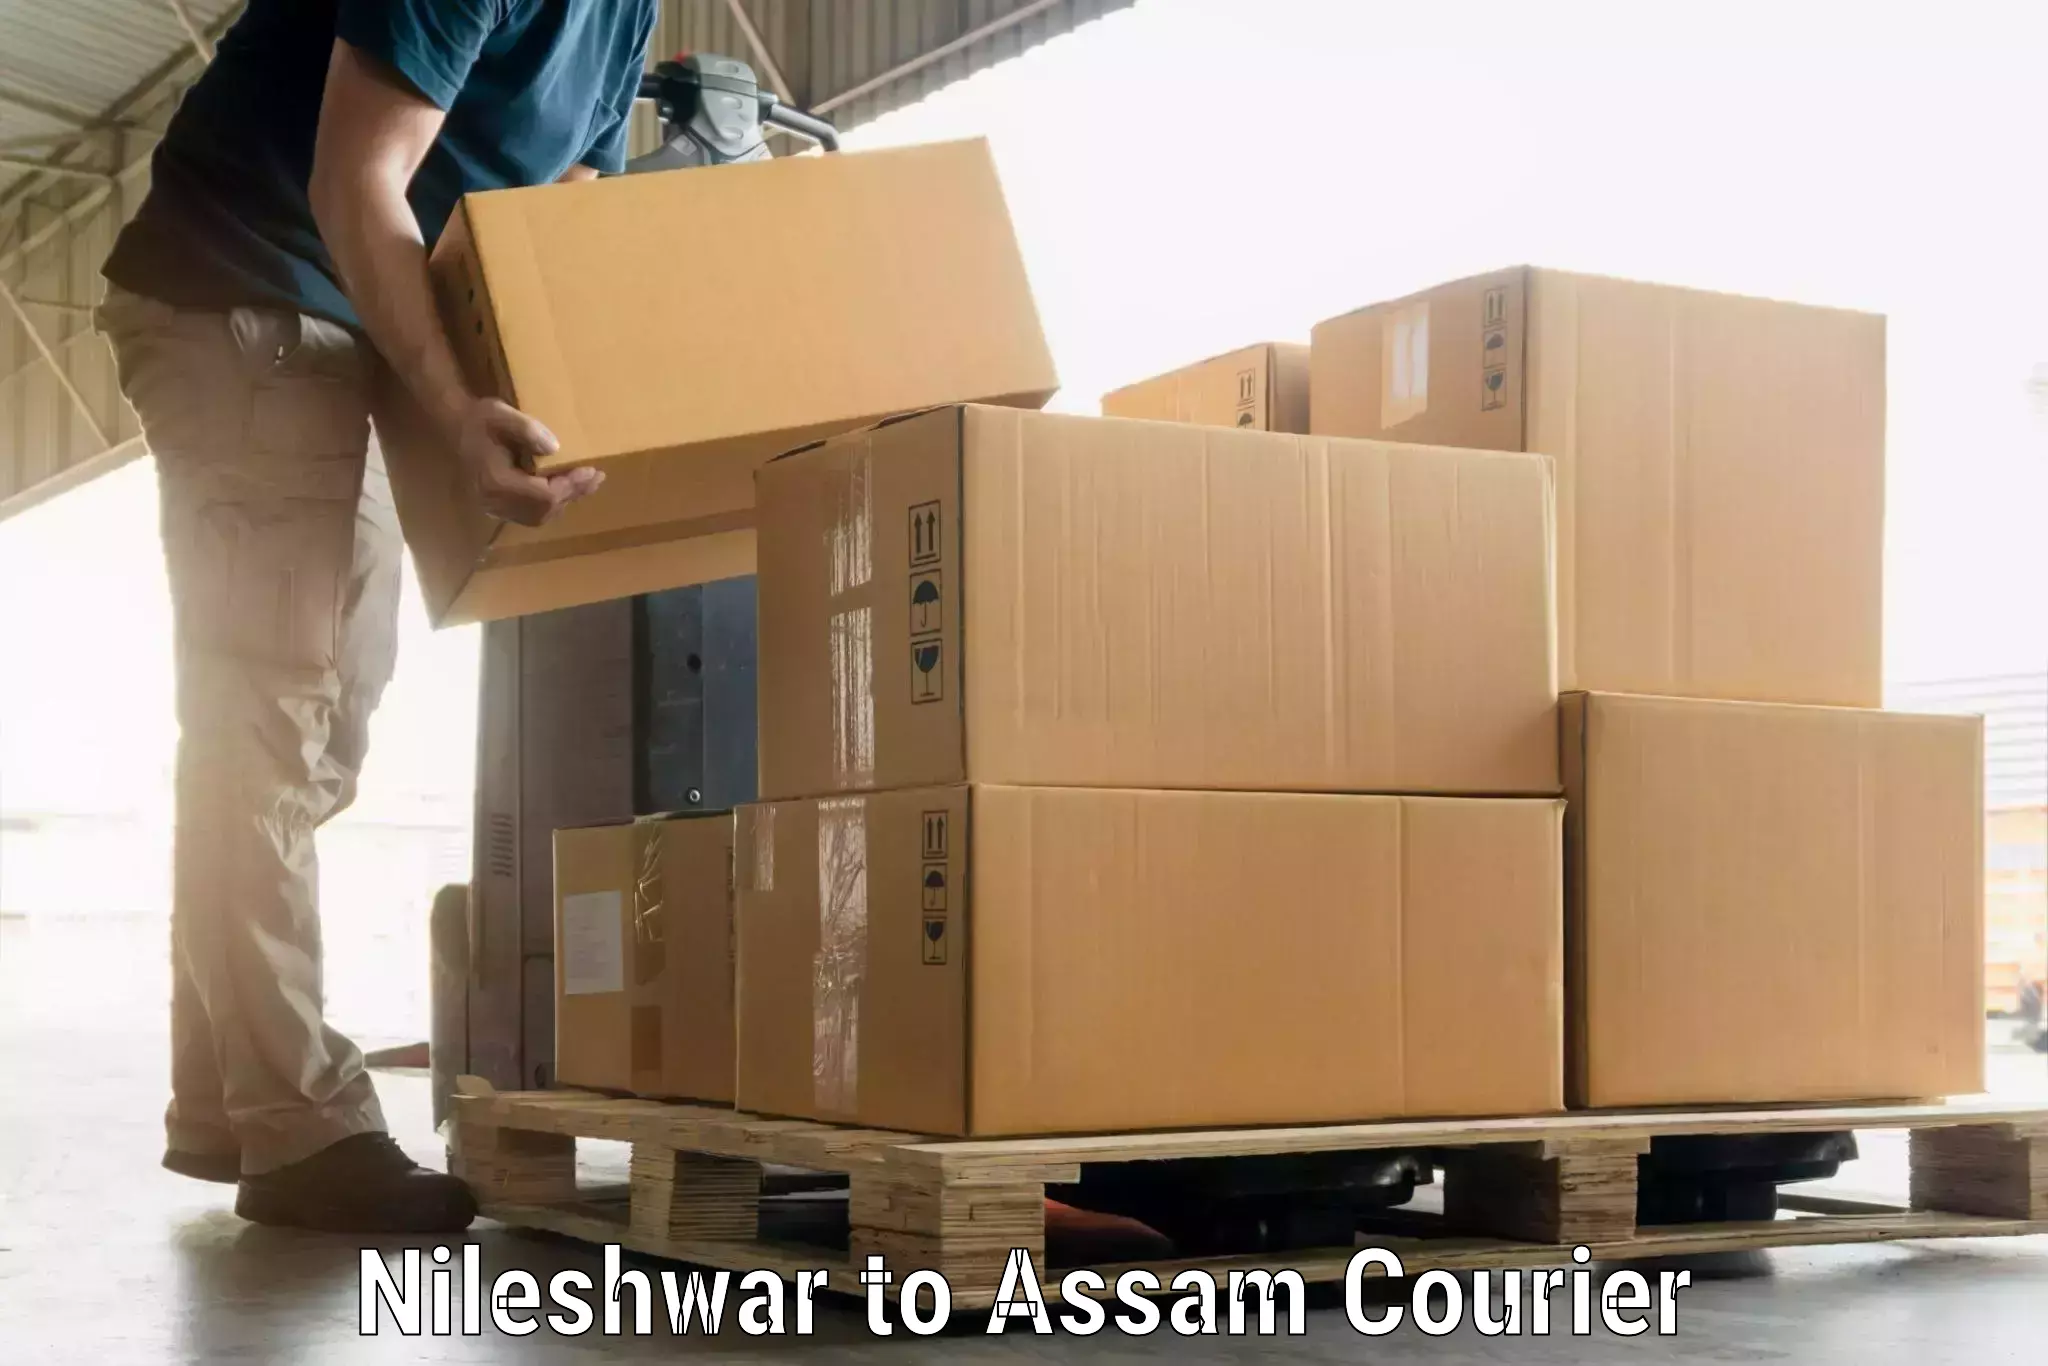 Door-to-door baggage service Nileshwar to Dibrugarh University